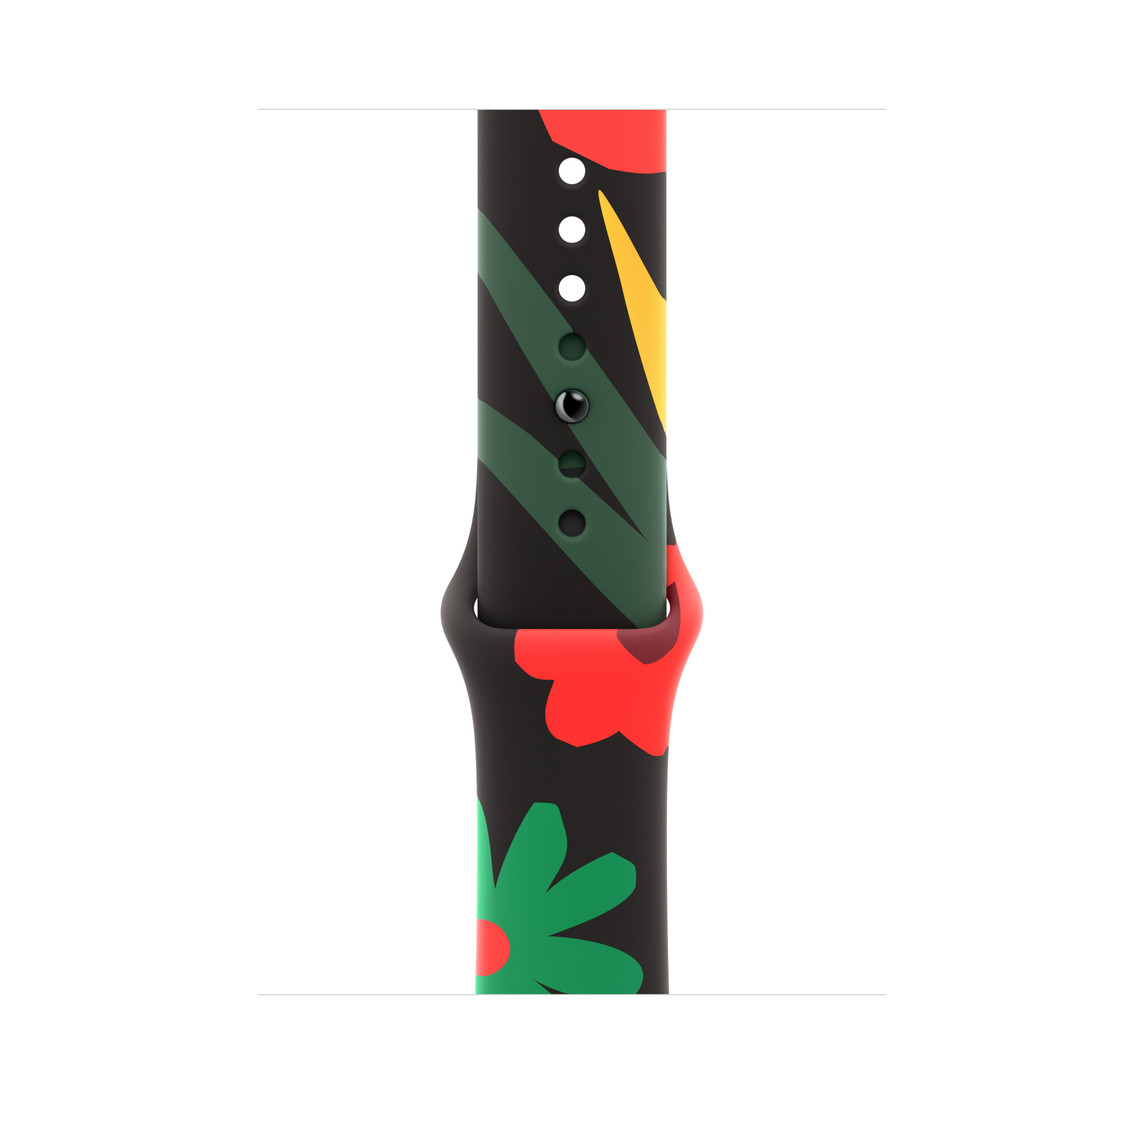 Correa deportiva Black Unity (Unity Bloom) decorada con flores de varias formas y tamaños dibujadas en un estilo sencillo y en varios tonos de rojo, verde y amarillo. La correa cuenta con un cierre de clip.